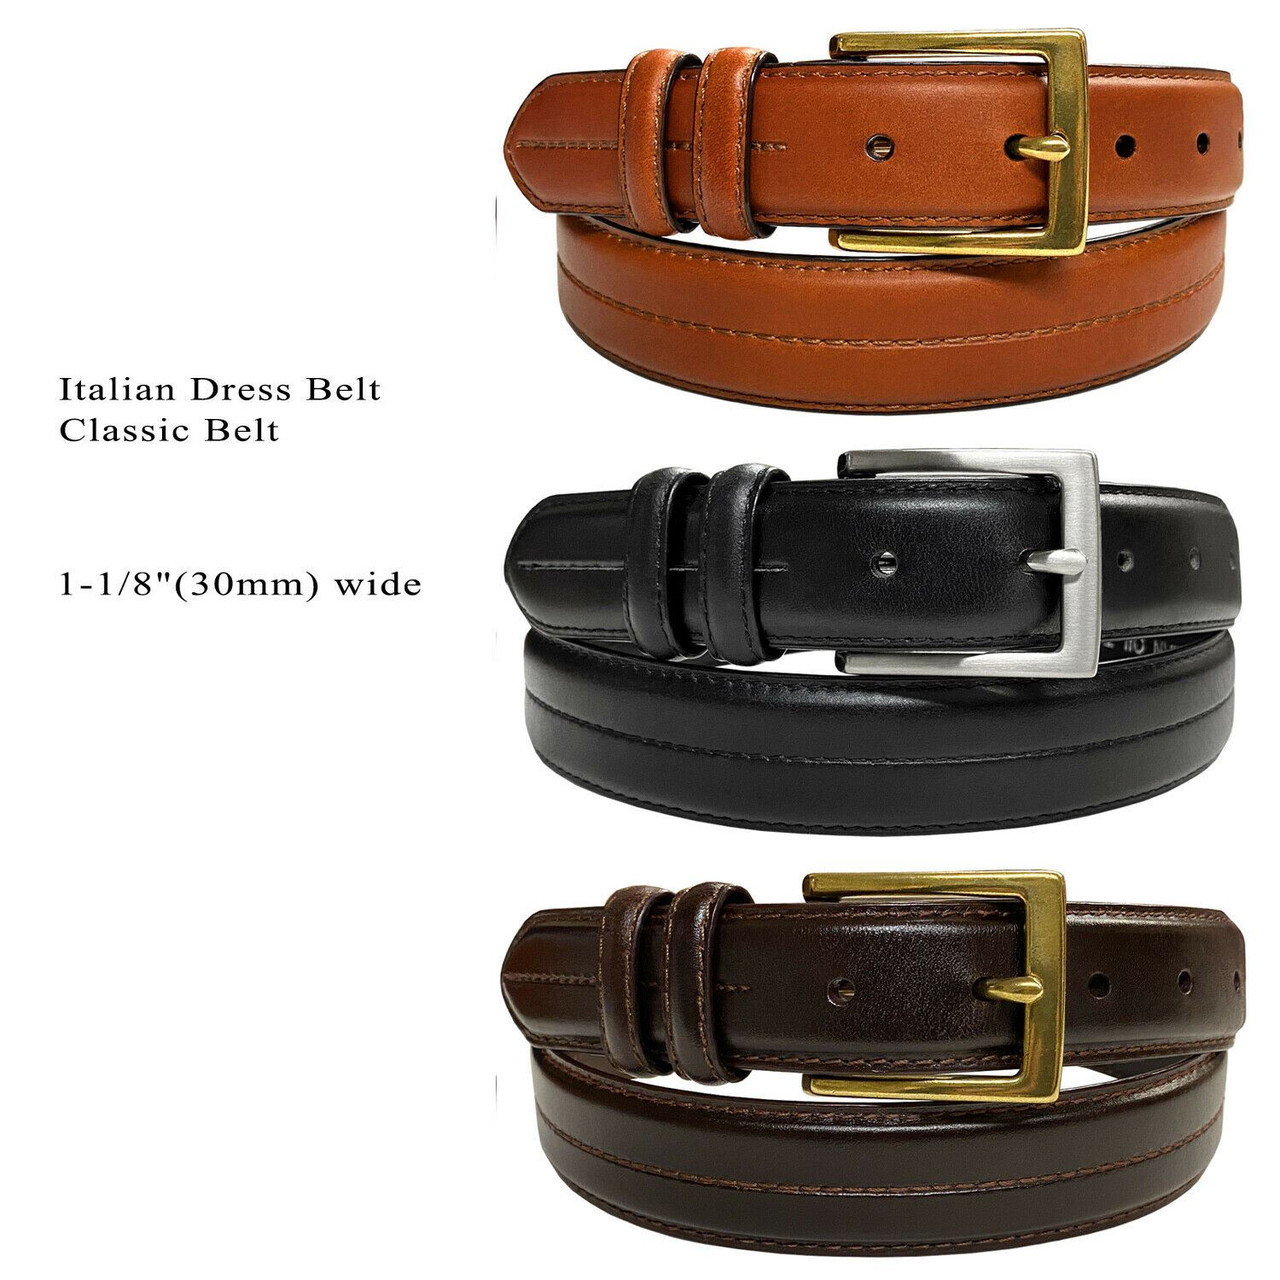 HJ20 Men's Oil-Tanned Genuine Leather Italian Dress Belt 1-1/8